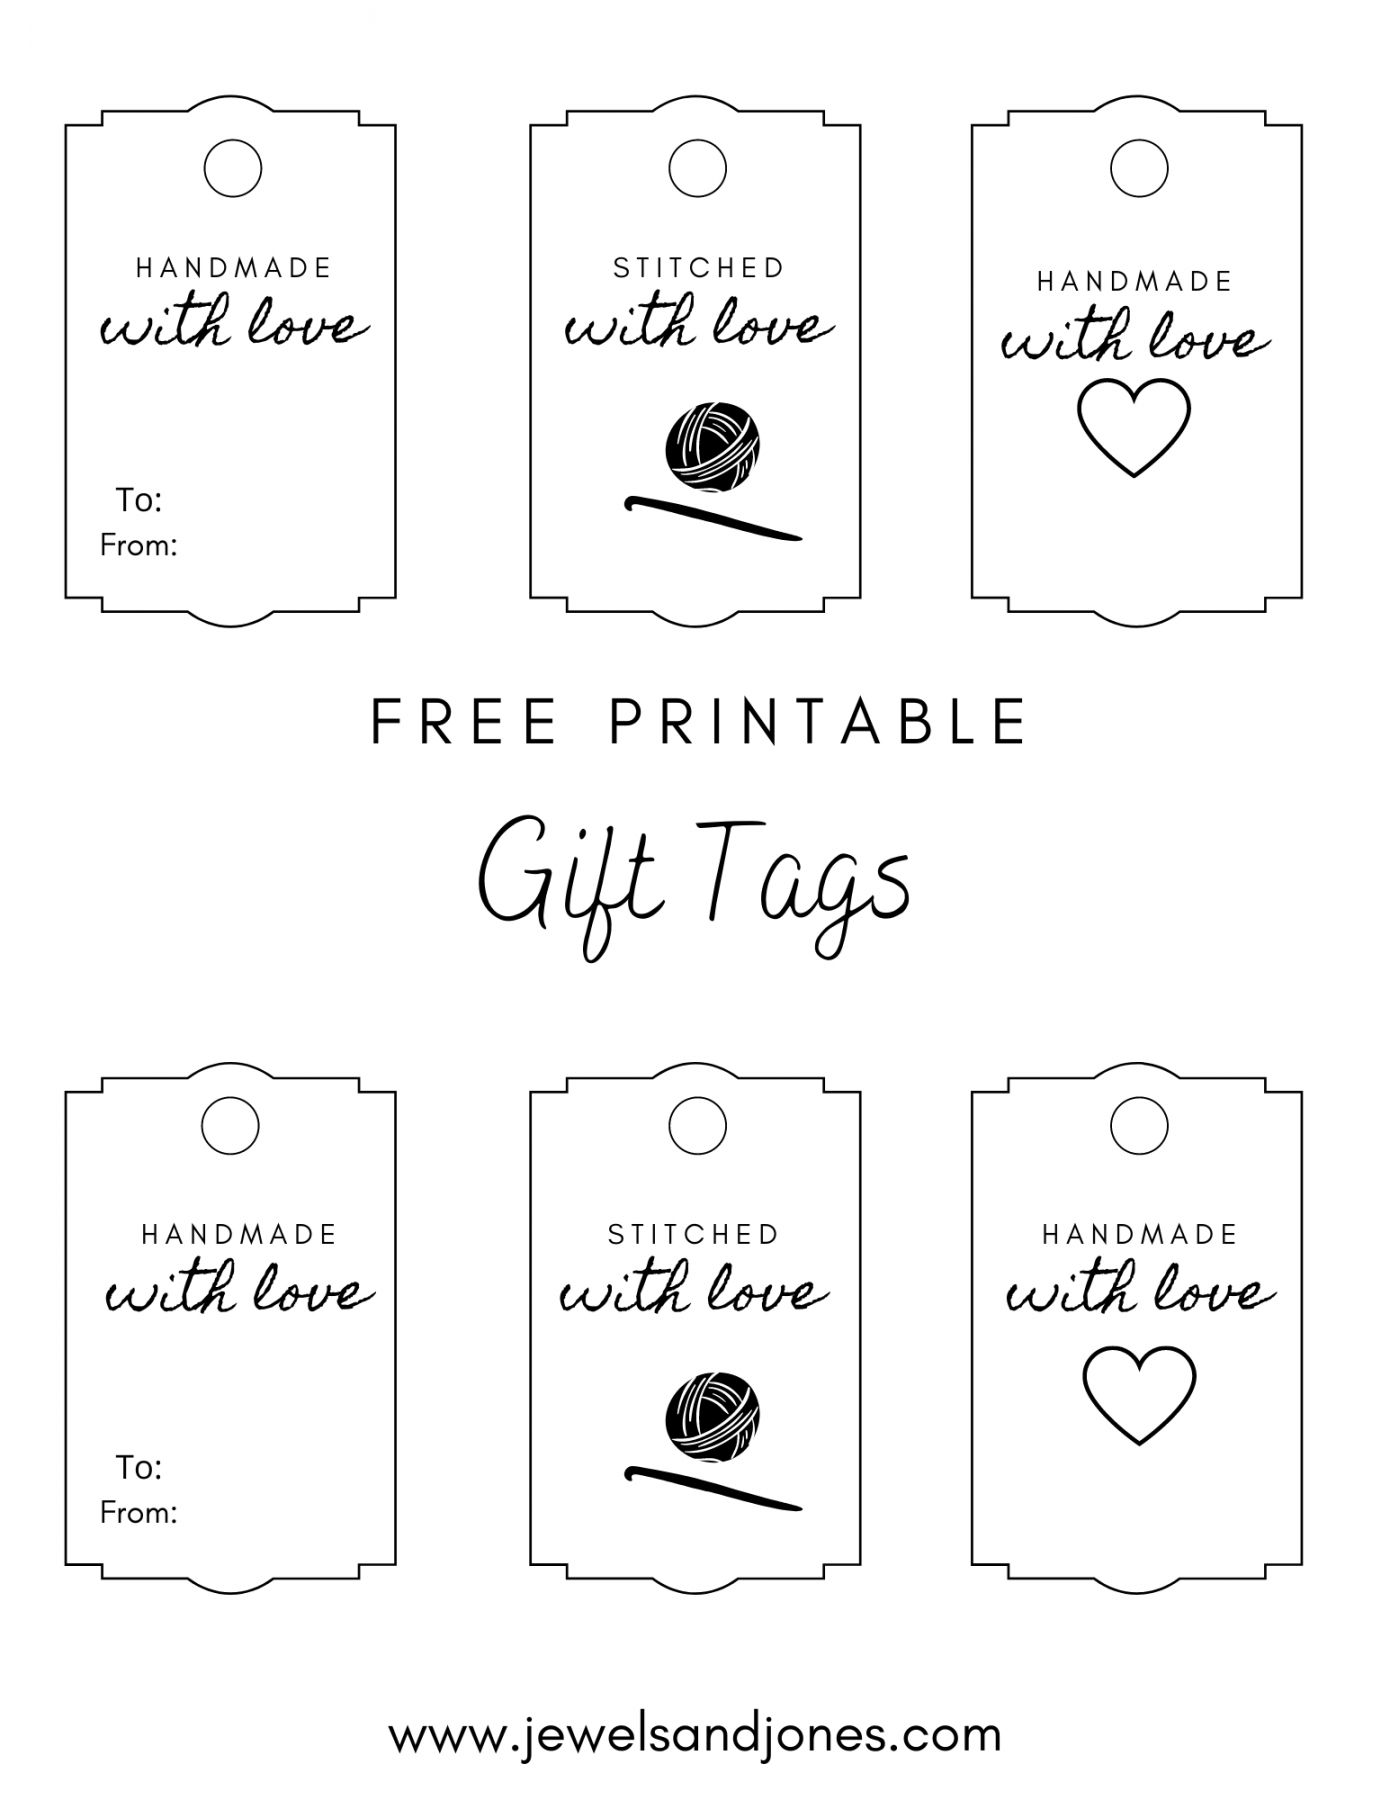 Printable Gift Tags Free - Printable - Crochet Gift Tags - Free Printable - Jewels and Jones